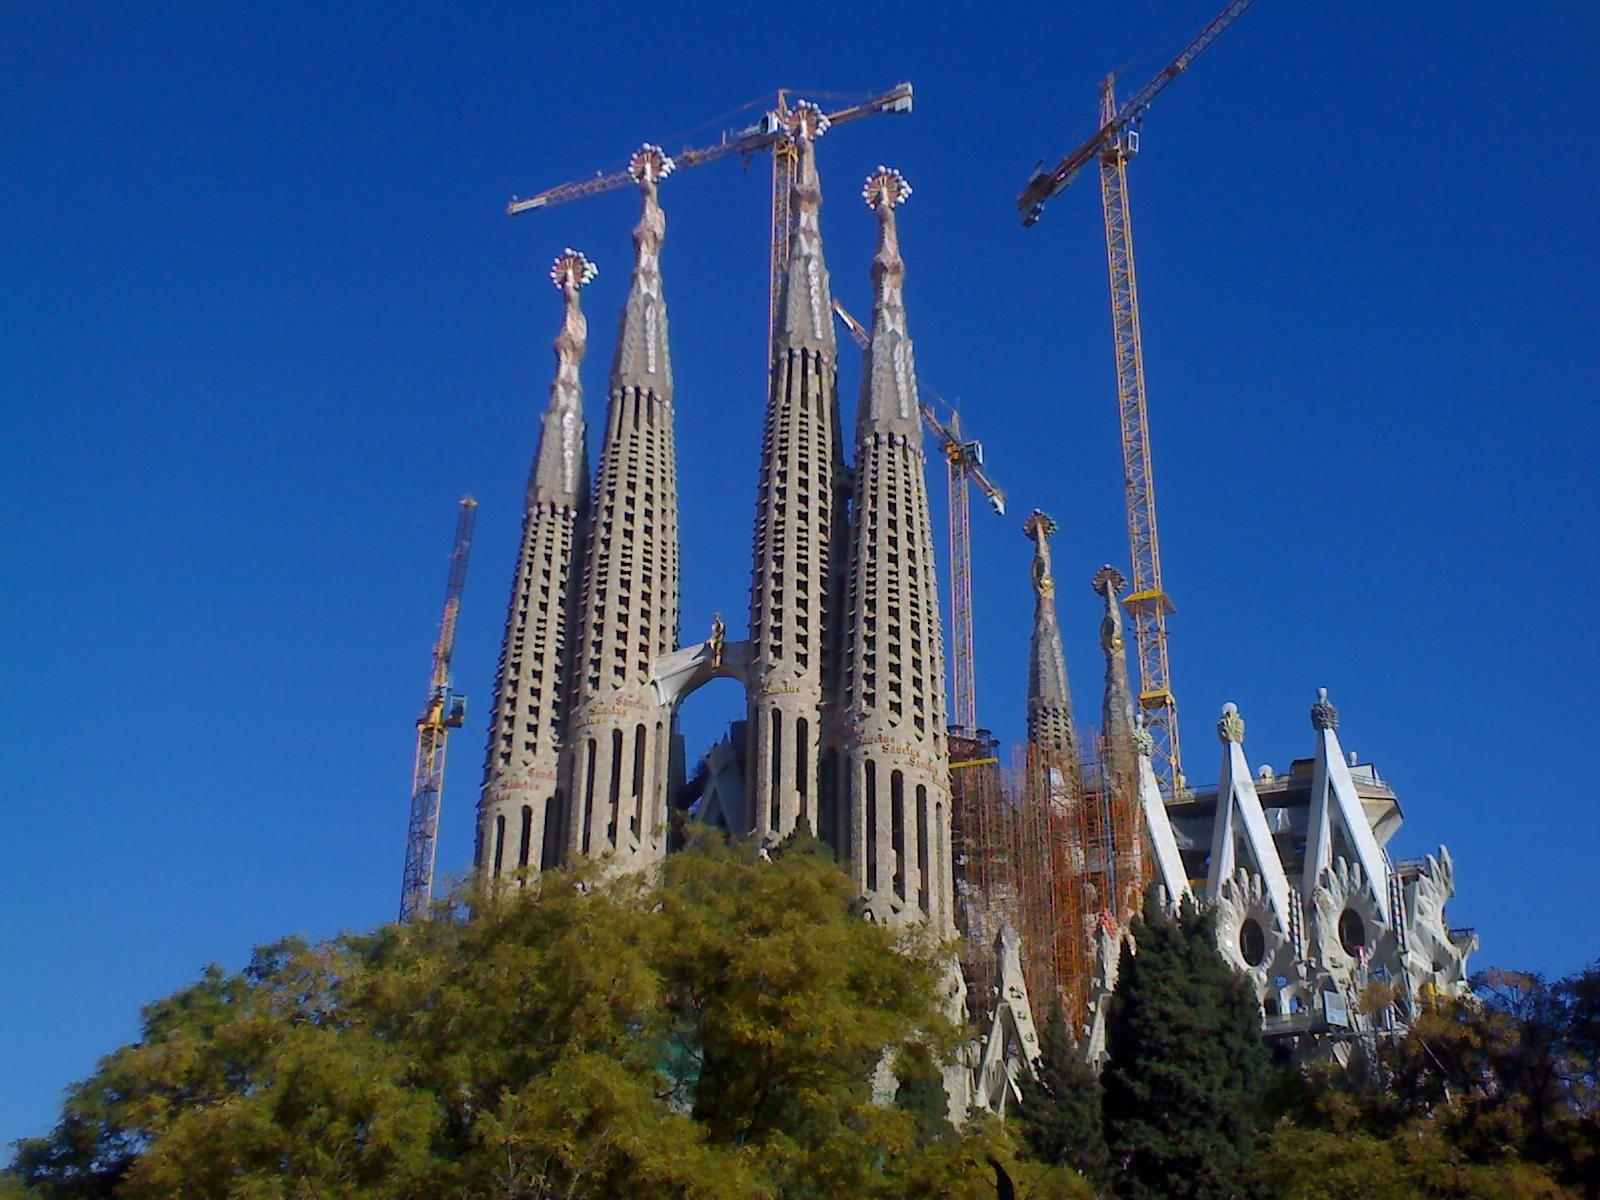 Architecture image La Sagrada Familia HD wallpaper and background